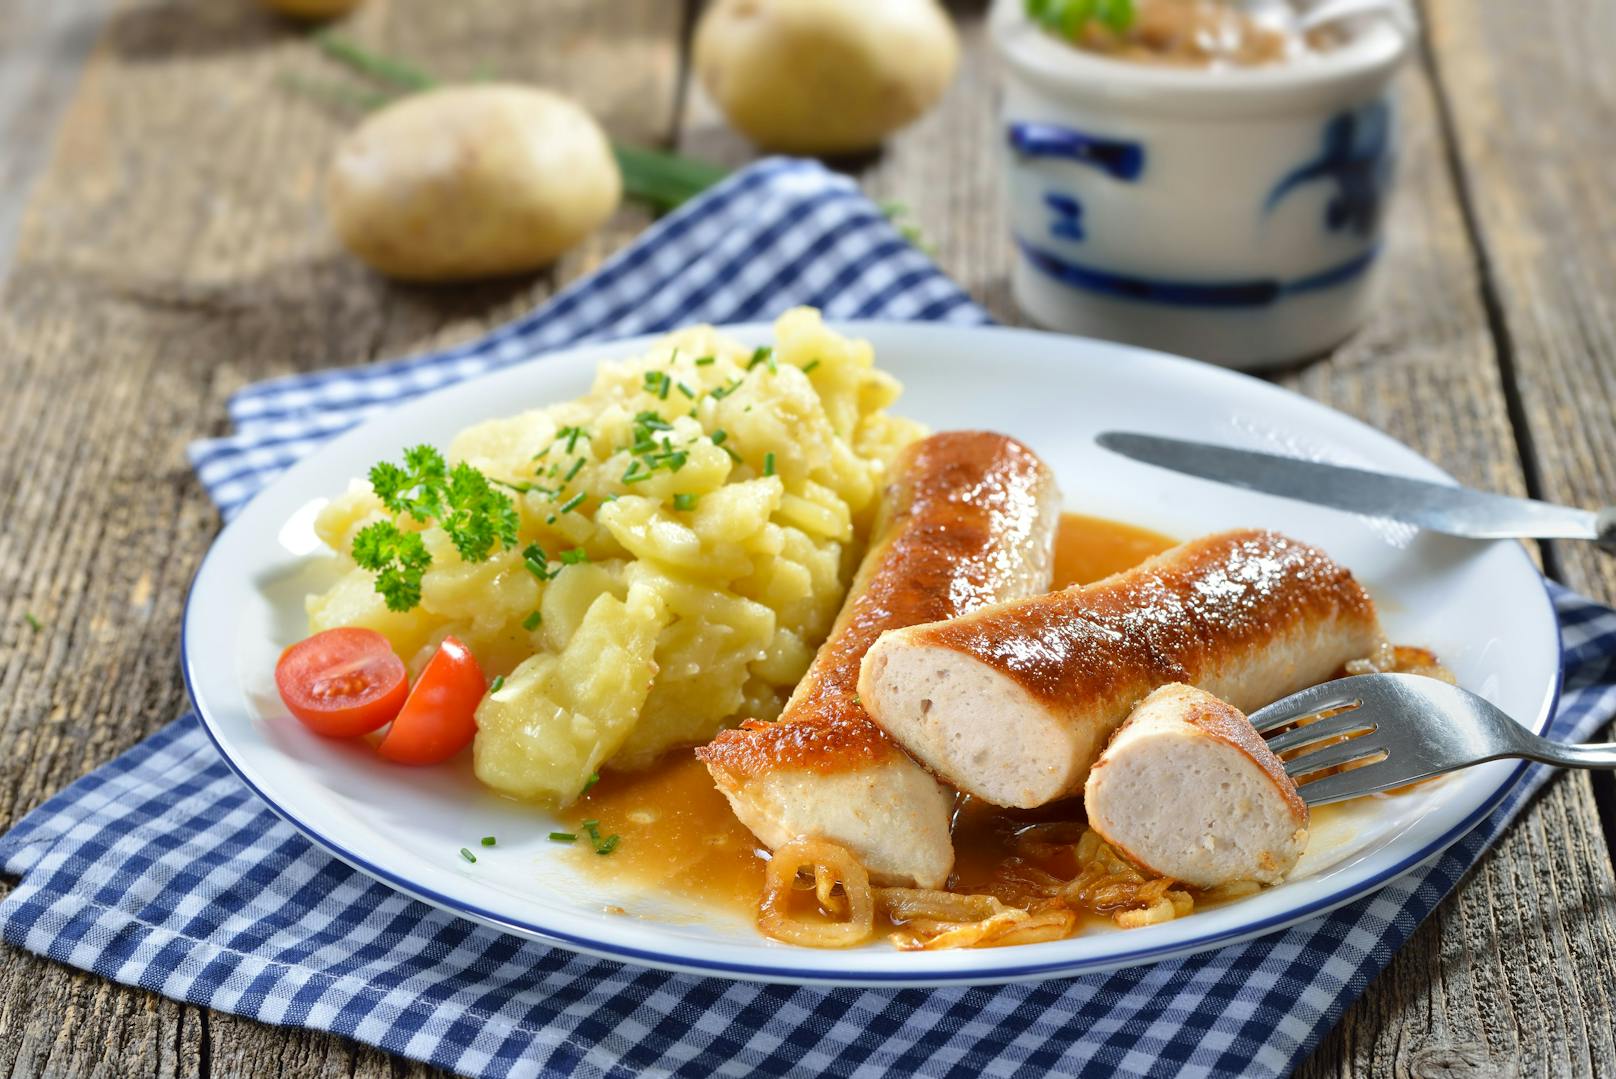 Das Leibgericht der Deutschen an Weihnachten ist laut der Umfrage Kartoffelsalat mit Wurst.